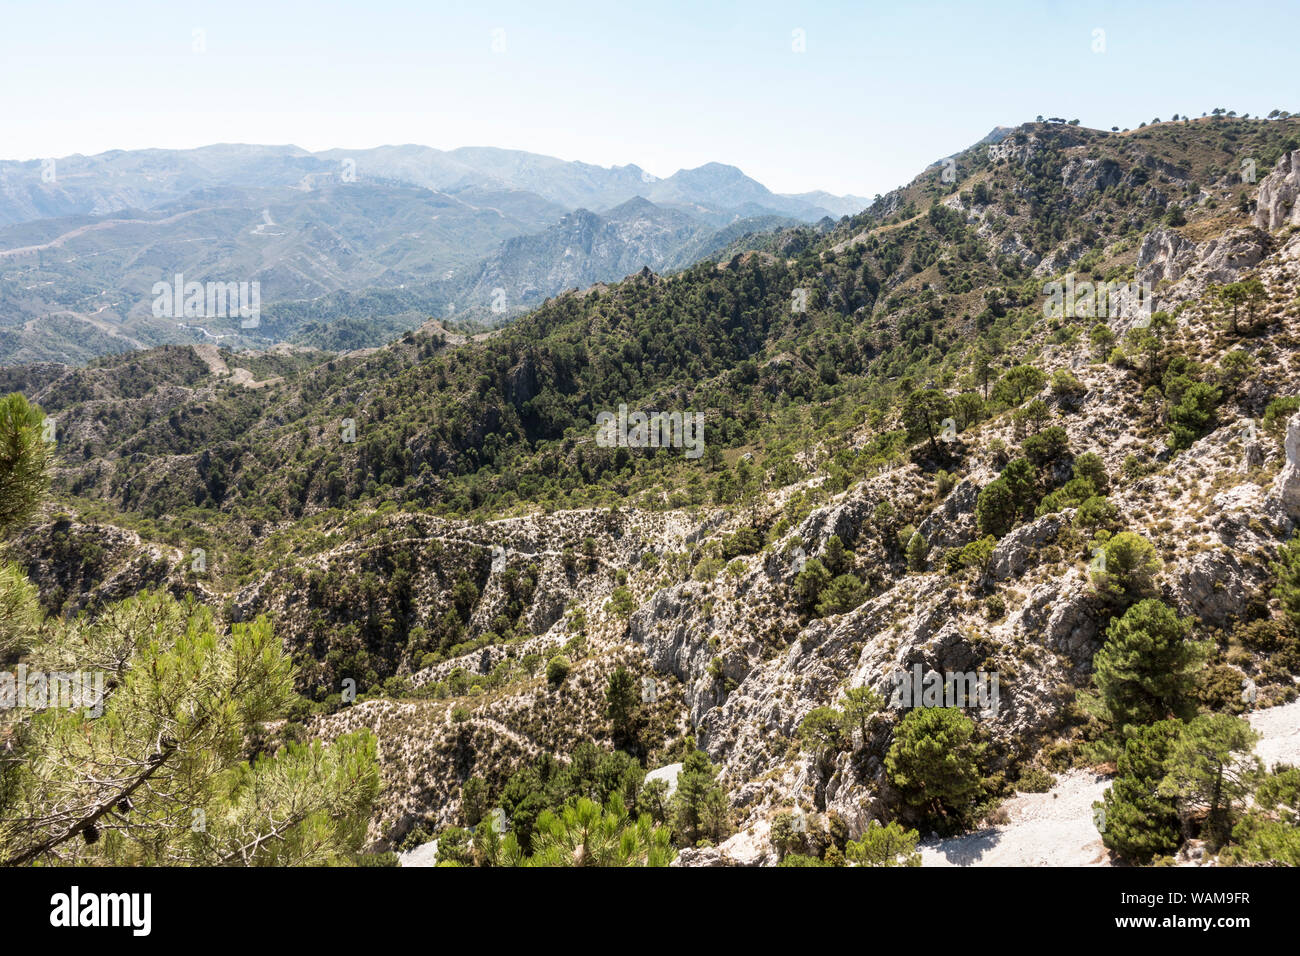 Vue panoramique du parc naturel des Sierras de Tejeda, Almijara y Alhama, en Andalousie, espagne. Banque D'Images